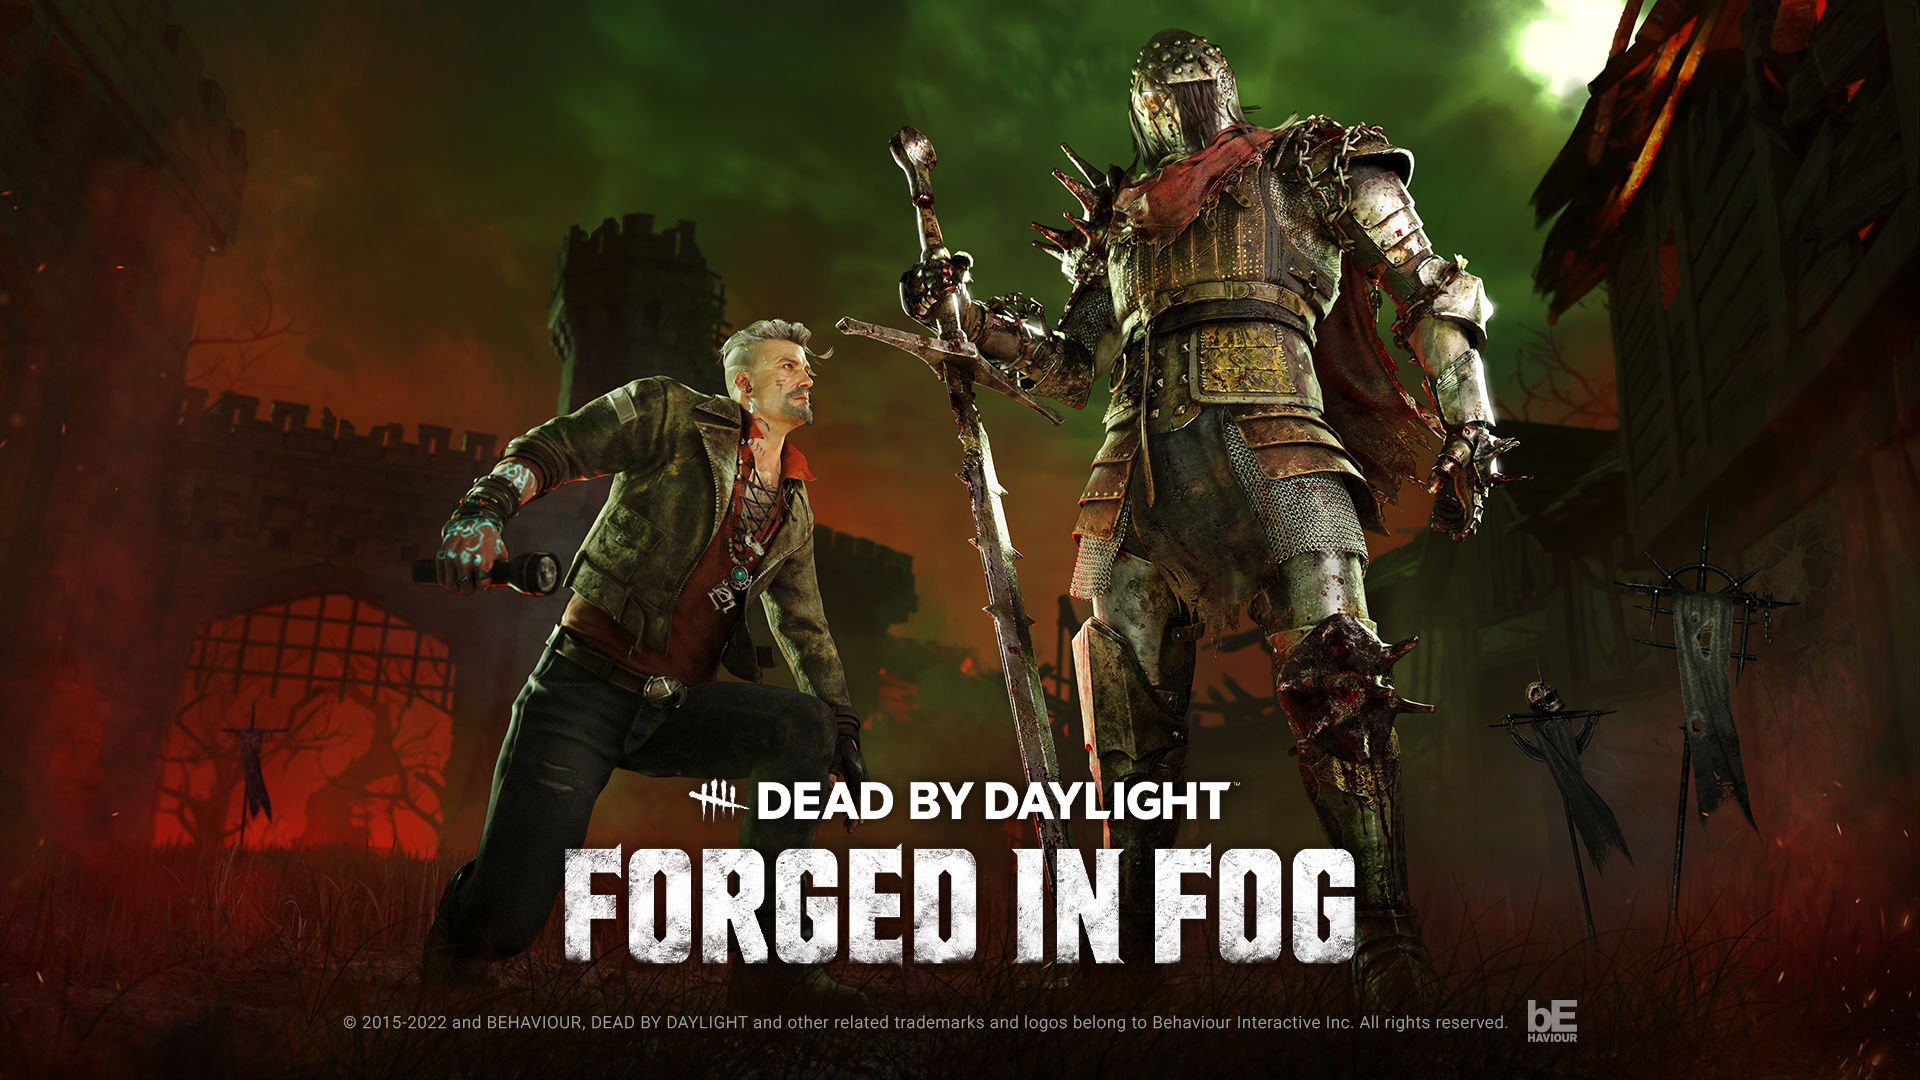 Dead By Daylight デッド バイ デイライト 謎に包まれたキャラクター2名が登場する新チャプター Forged In Fog 霧中の回生 が11月23日 水 から発売決定 Behaviour Interactive Inc のプレスリリース